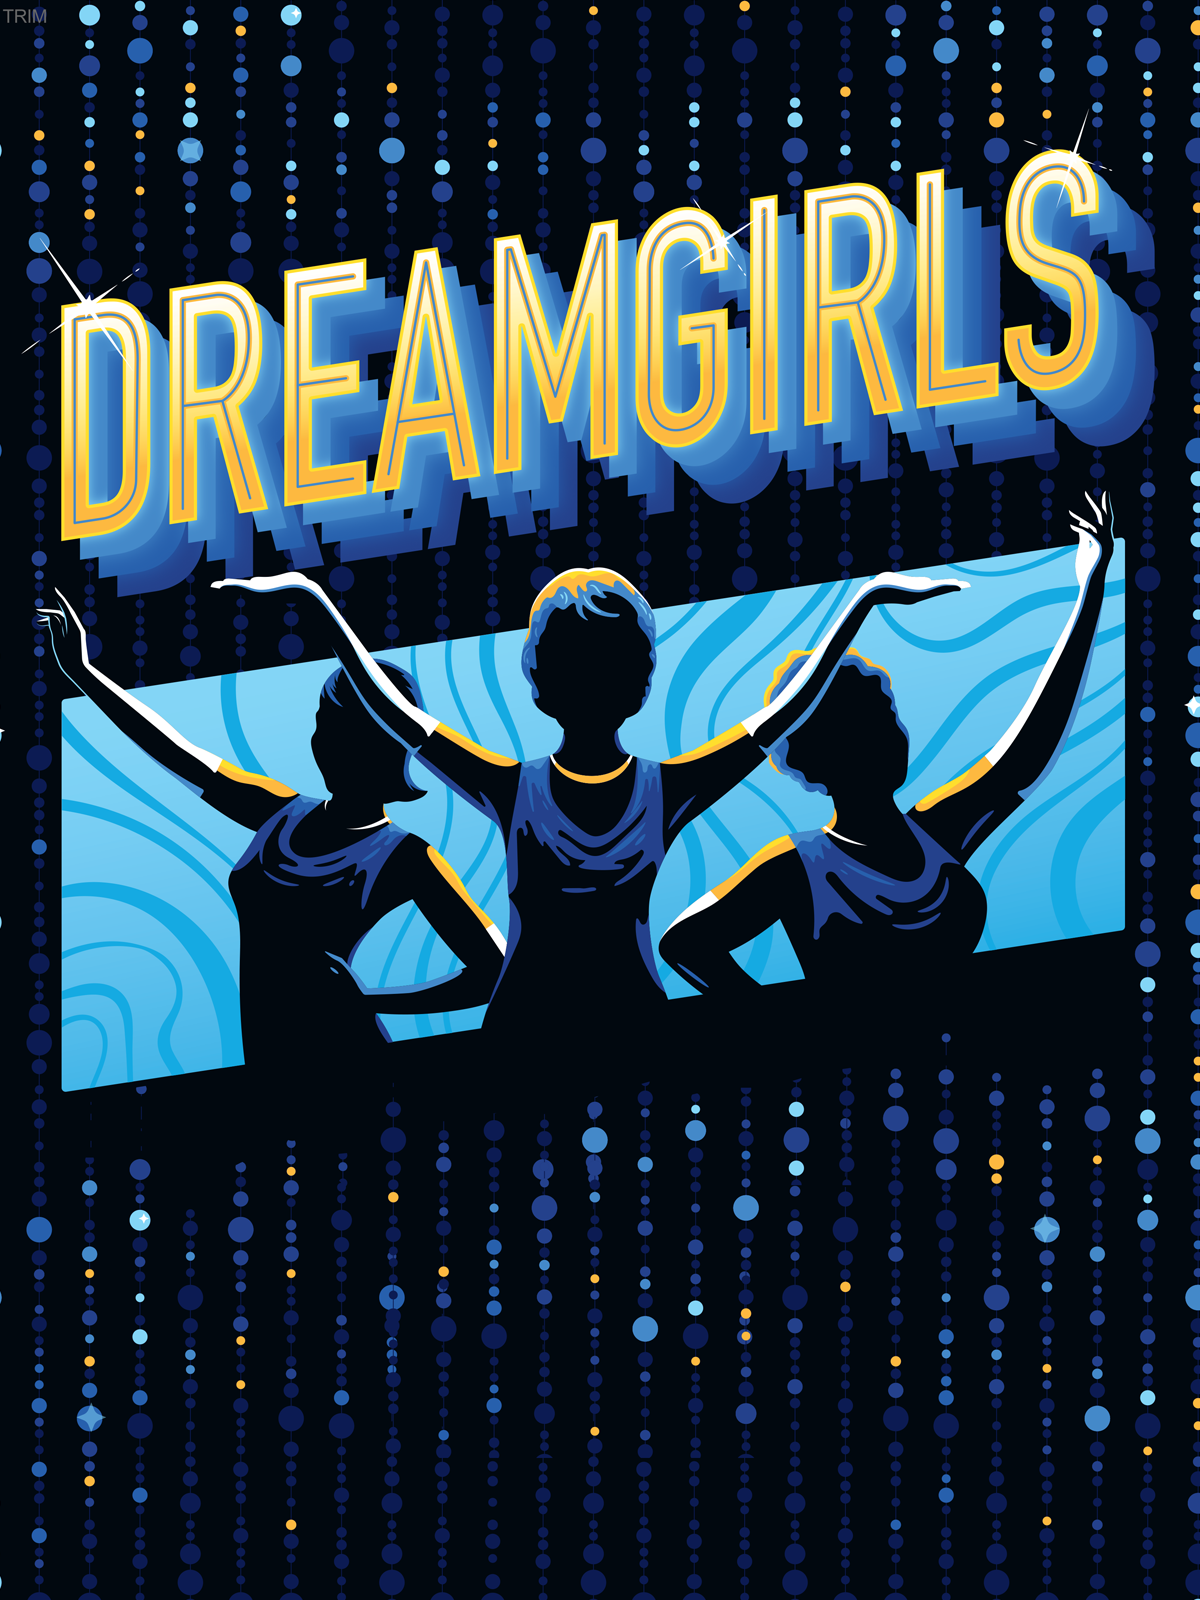 dreamgirls movie poster